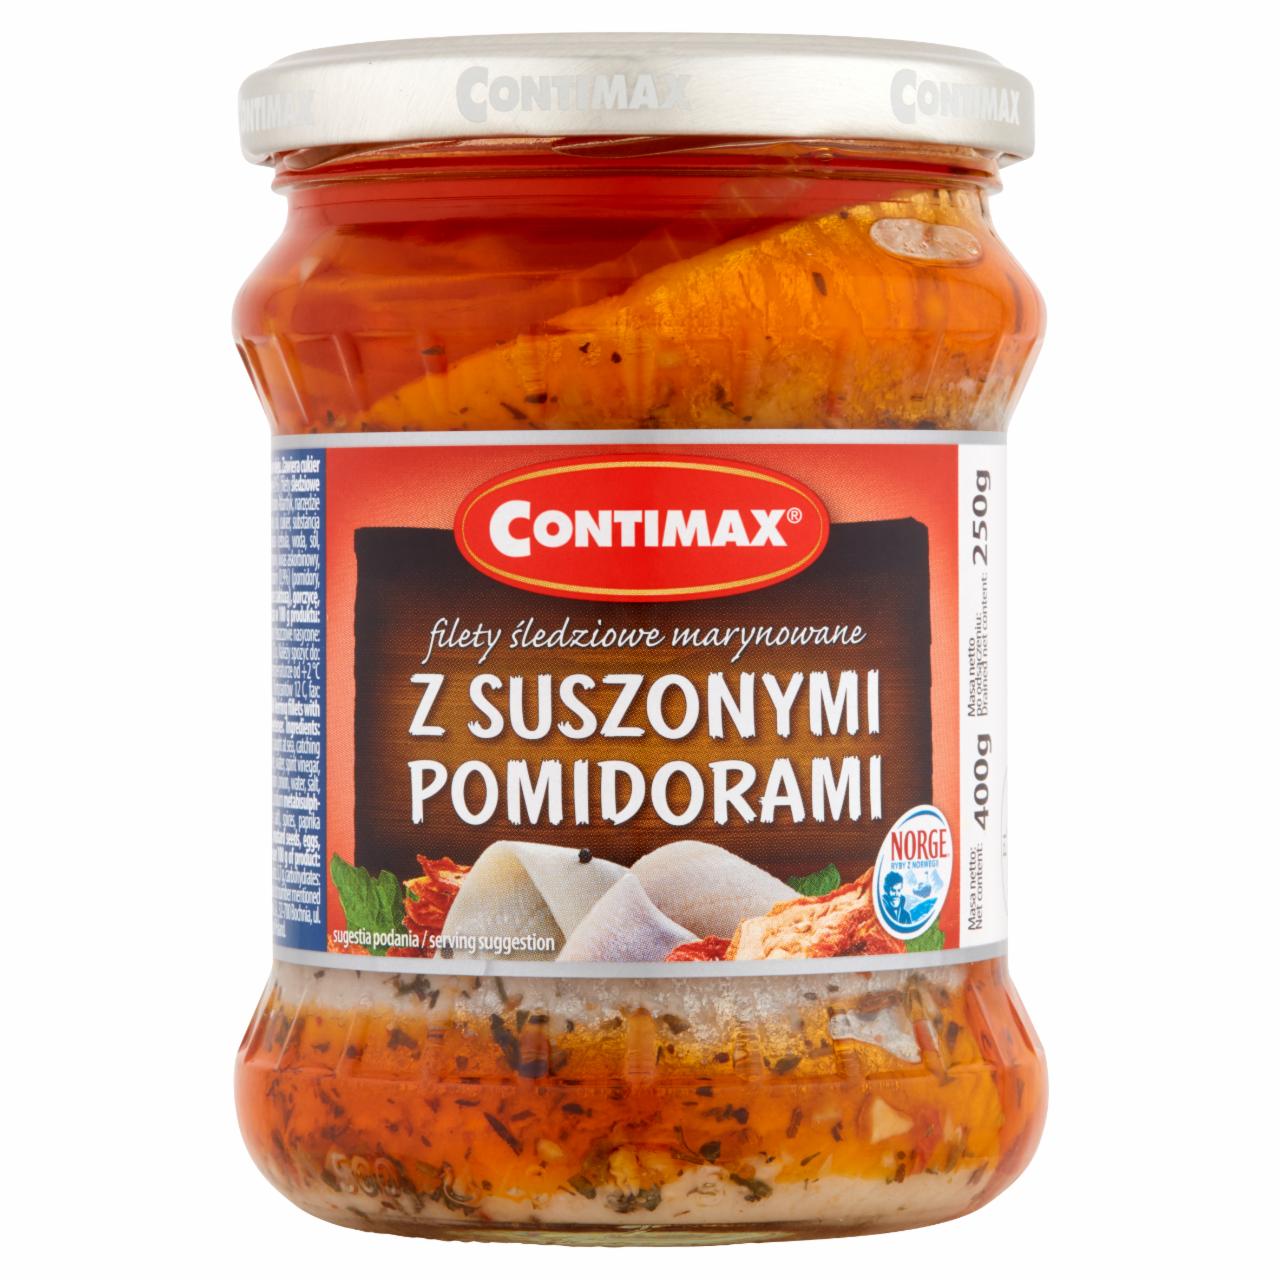 Zdjęcia - Contimax Filety śledziowe marynowane z suszonymi pomidorami 400 g